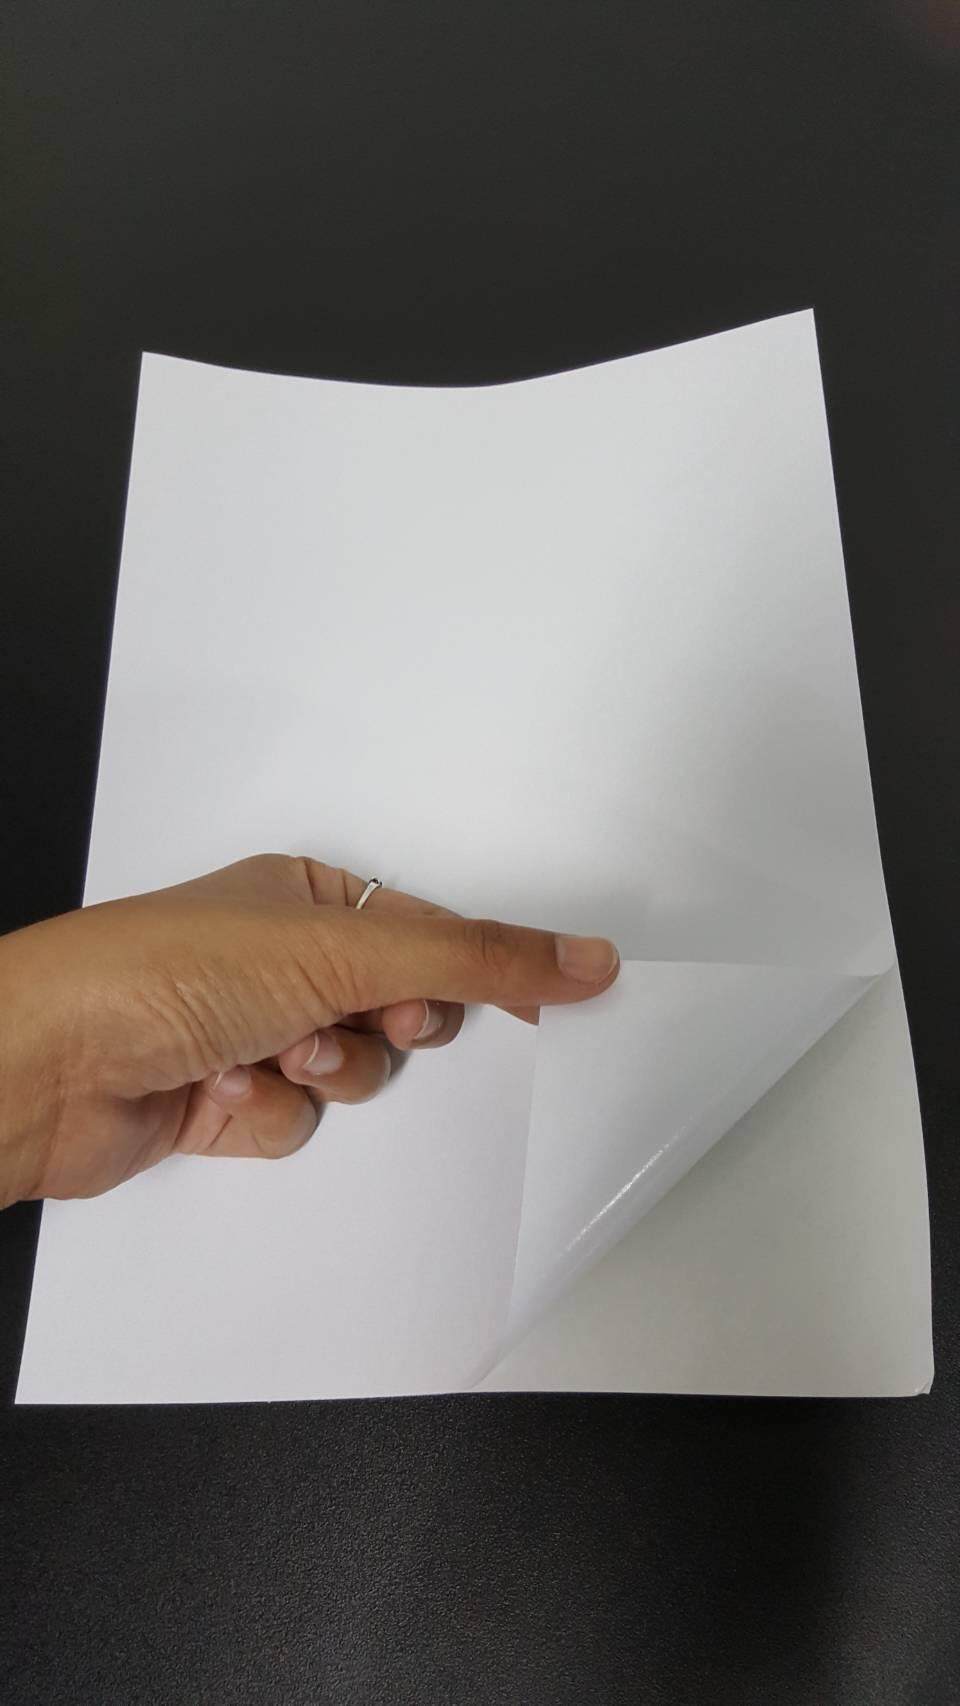 DEEFA-SPNA4 สติ๊กเกอร์กระดาษผิวด้าน ขนาด A4 60 แกรม จำนวน 1 แพ็ค (50 แผ่น) ใช้ได้ทั้งเครื่องพิมพ์ INKJET และ LASER บางลงเพื่อให้สามารถใช้ได้ทั้งเครื่องพิมพ์แบบป้อนกระดาษถาดล่างและบน